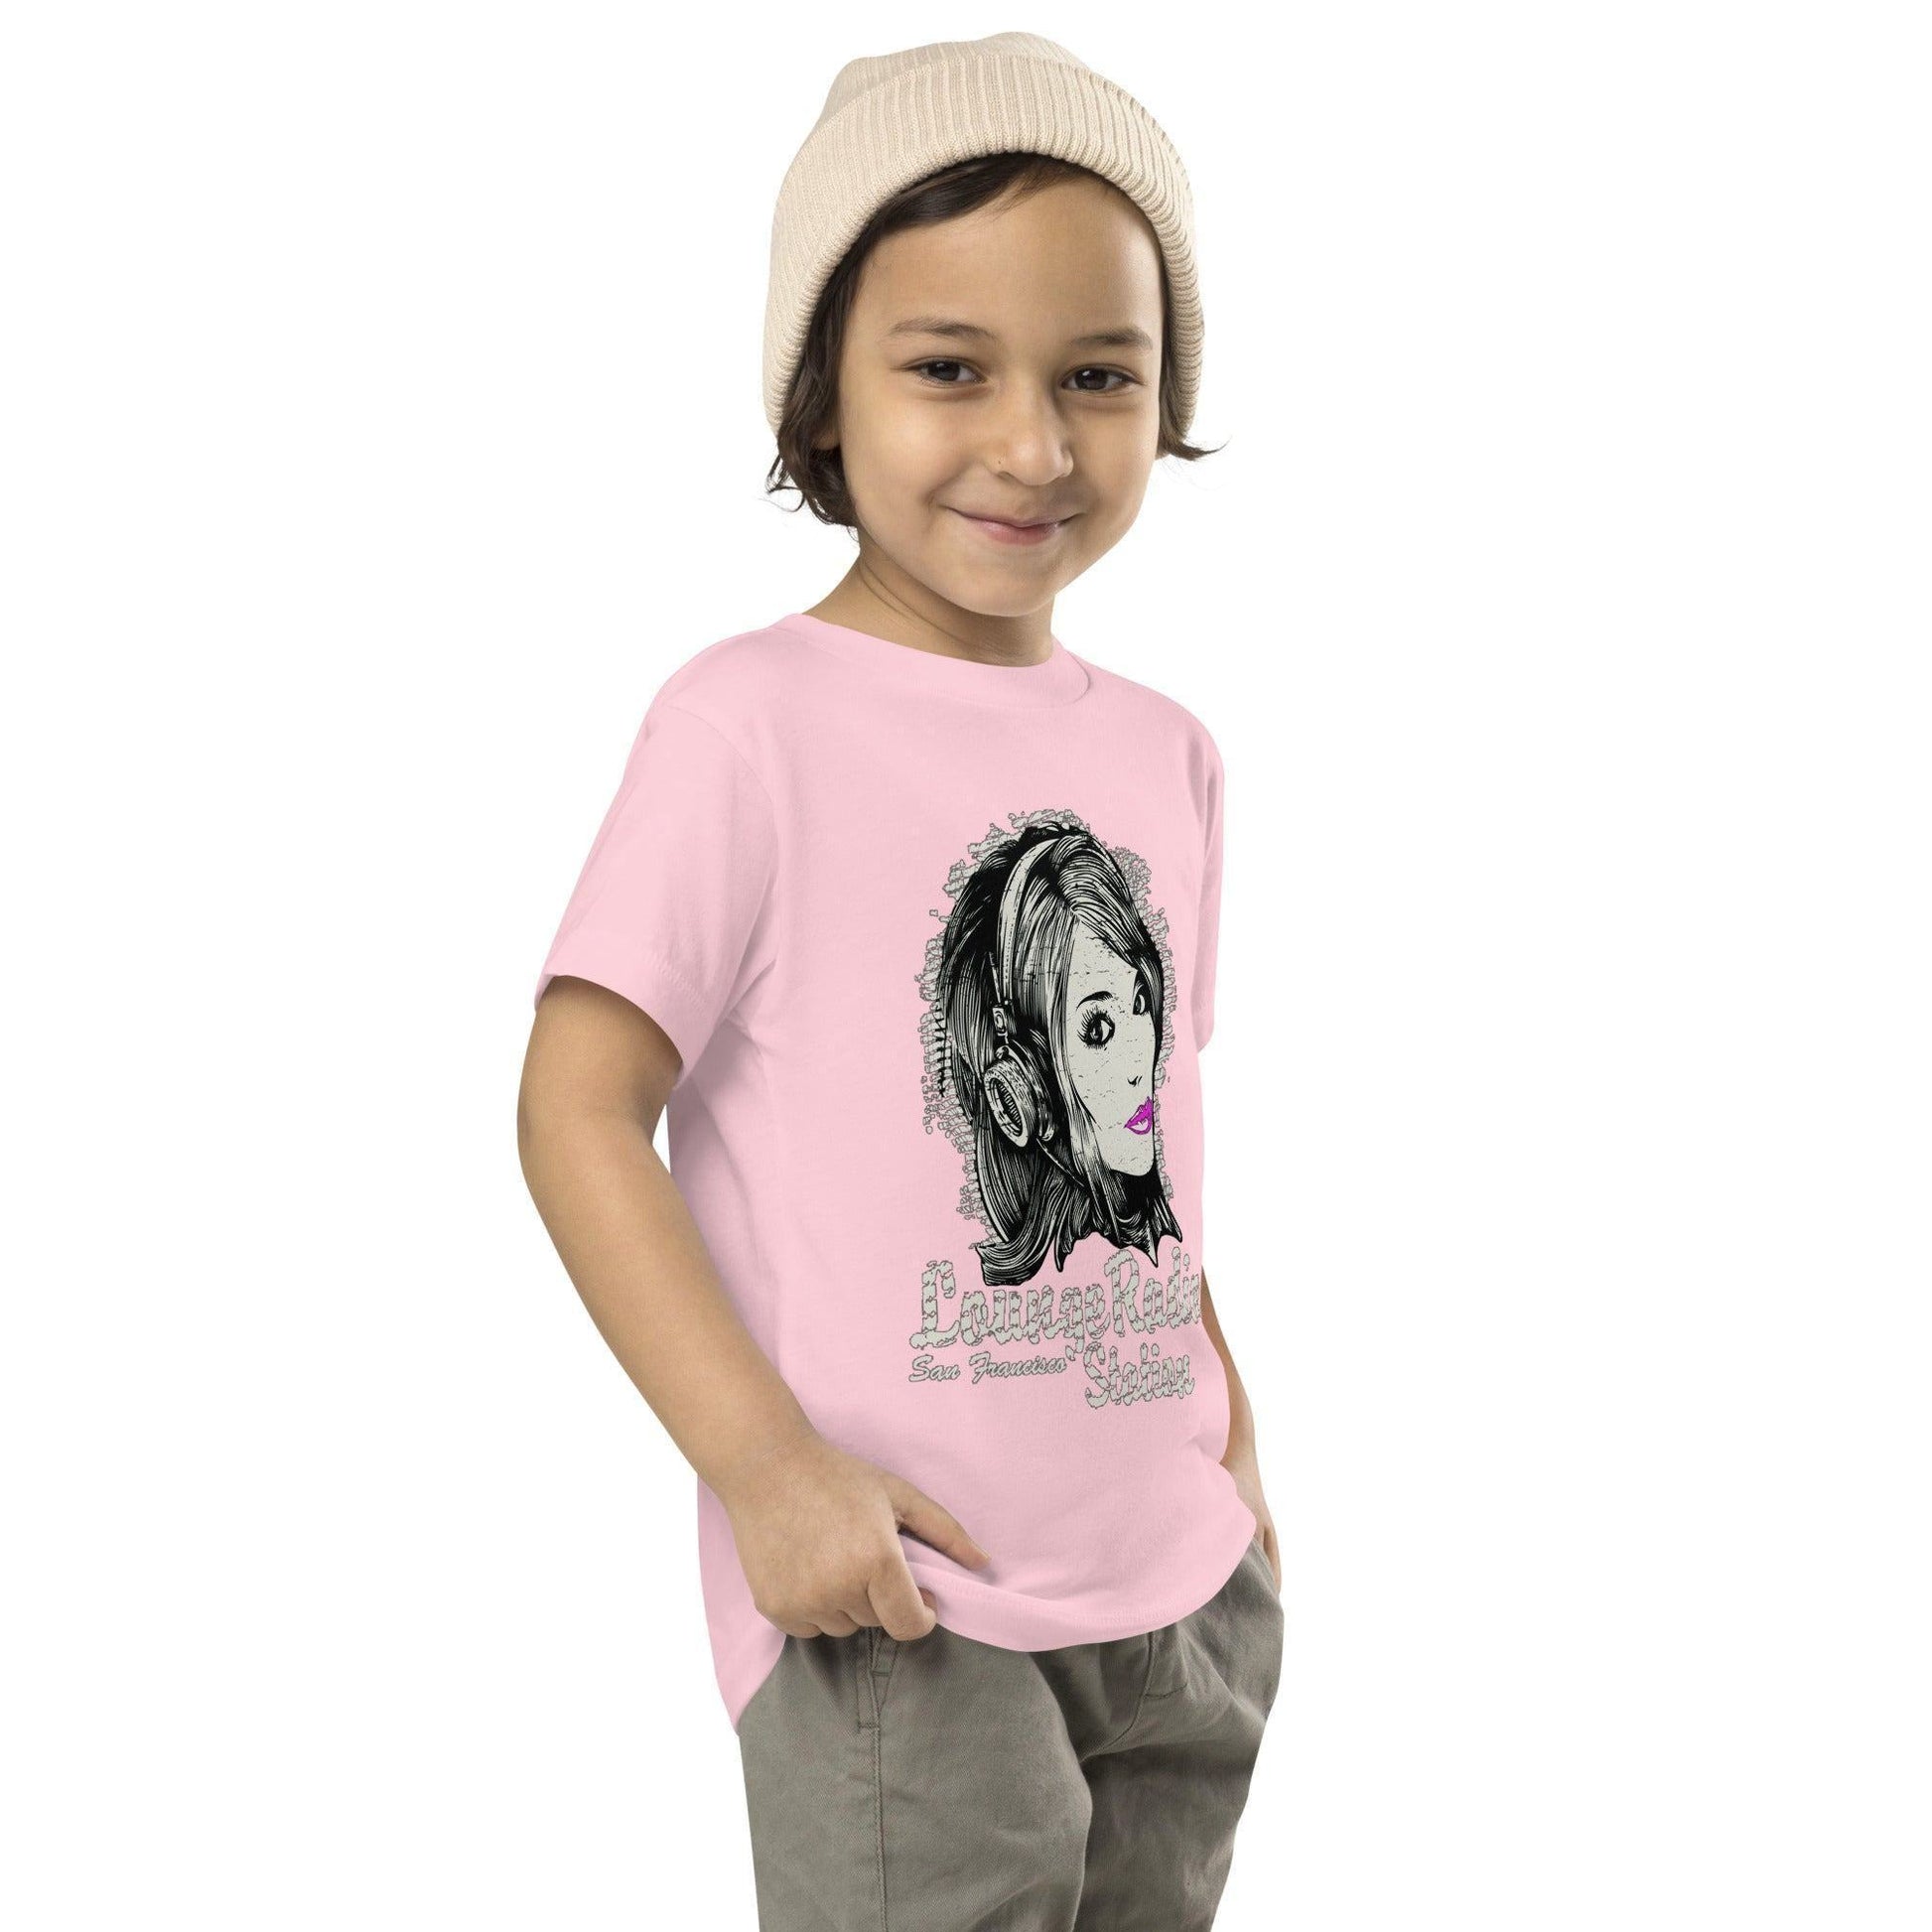 Lounge Radio T-Shirt für Kleinkinder -- Lounge Radio T-Shirt für Kleinkinder - undefined T-Shirt | JLR Design